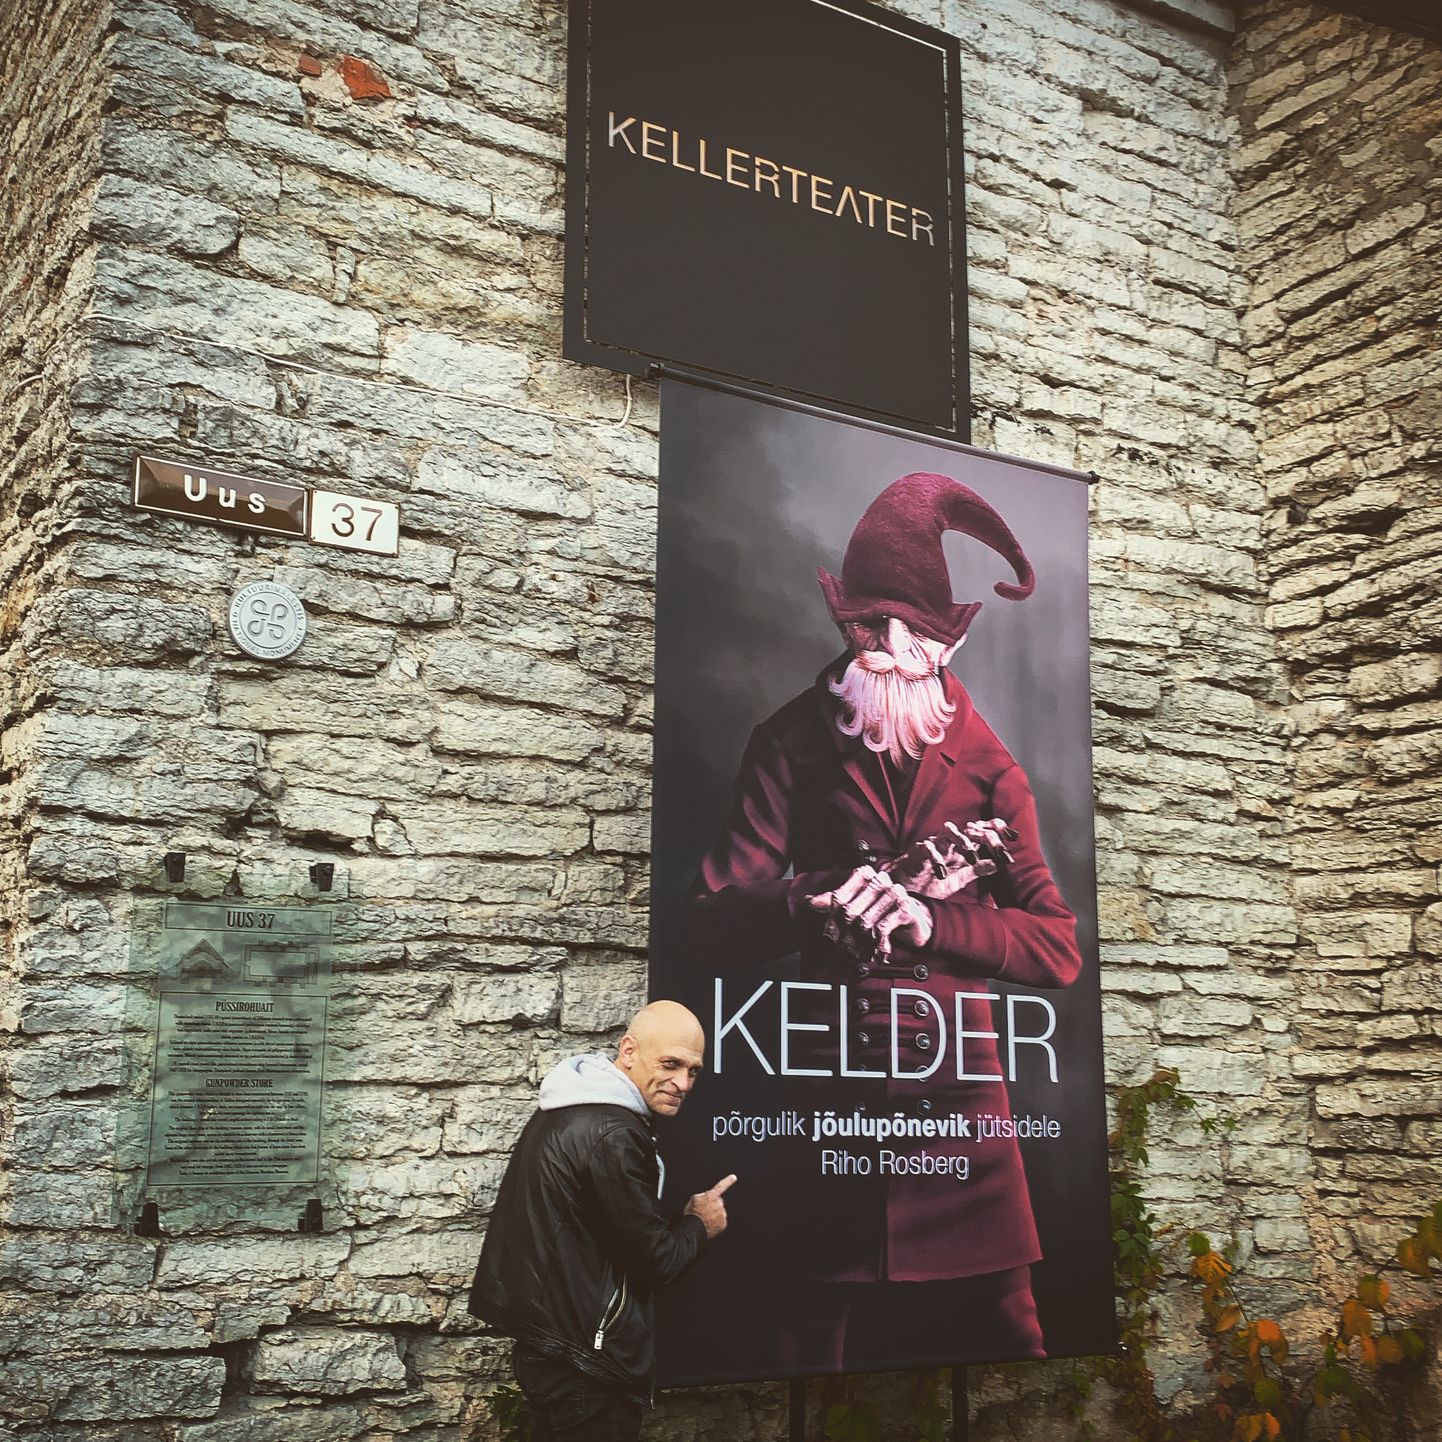 Kellerteatris esietendub kogupere jõulupõnevik «Kelder».